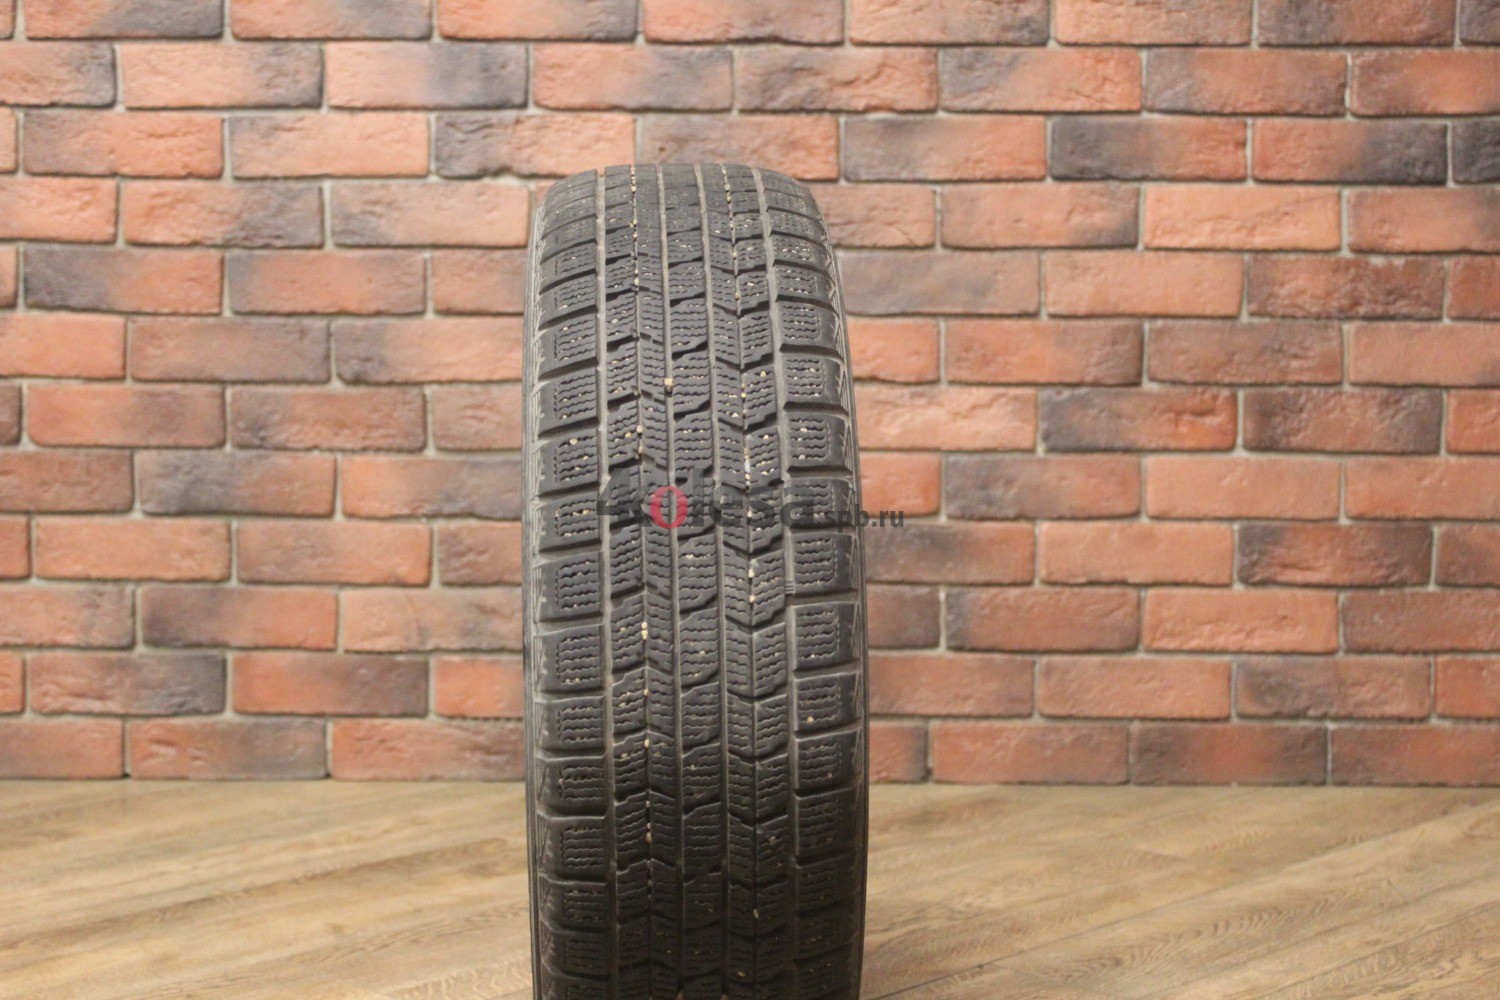 Зимние нешипованные шины R15 185/65 Dunlop DSX-2 бу Лип. (6-7 мм.)